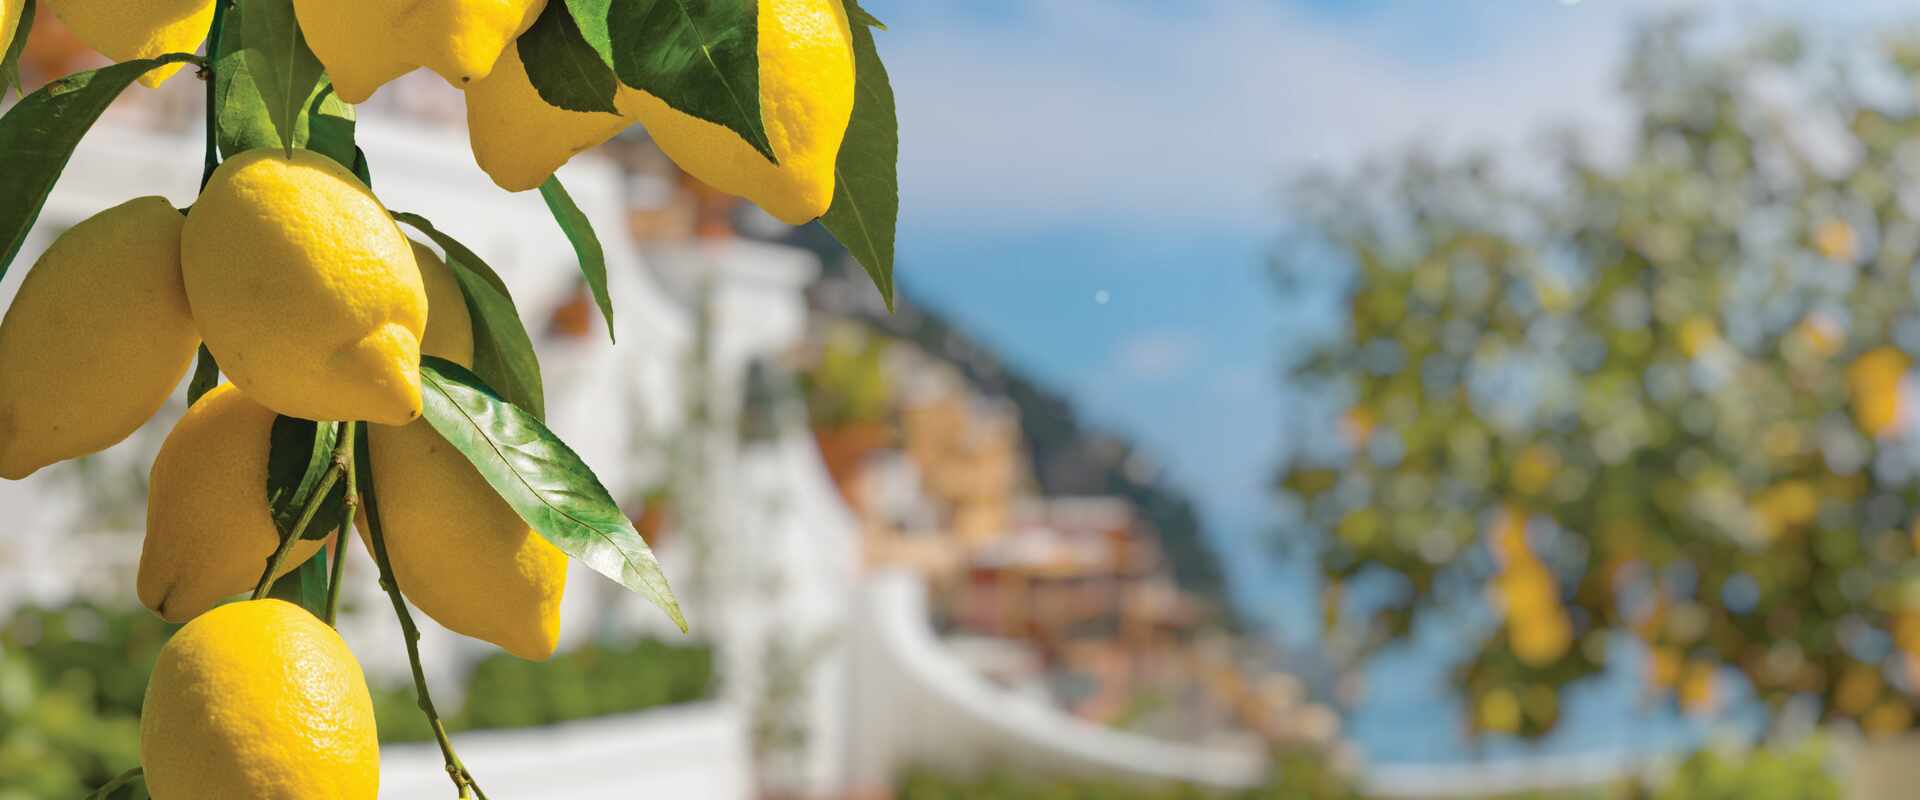 Amalfi Coast Lemons, Italy